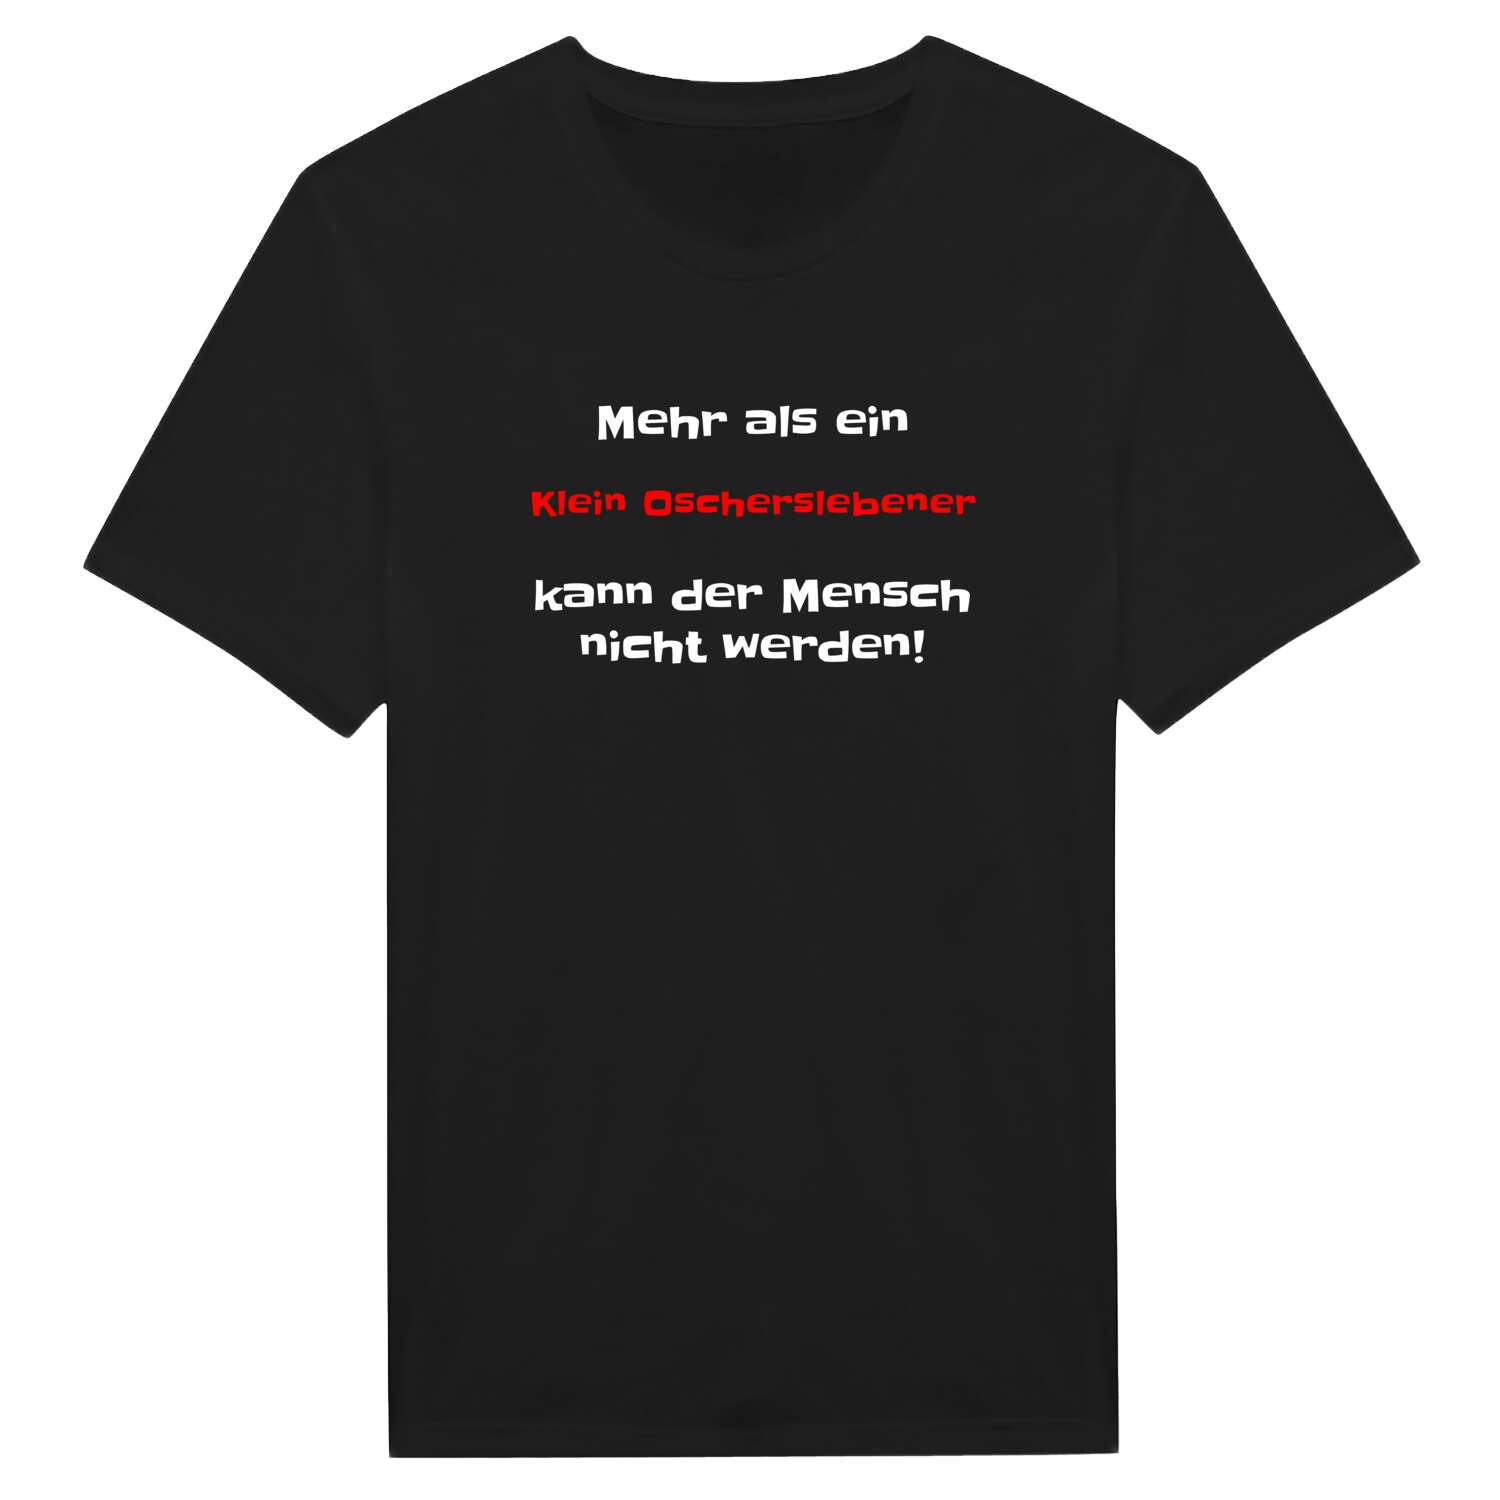 Klein Oschersleben T-Shirt »Mehr als ein«